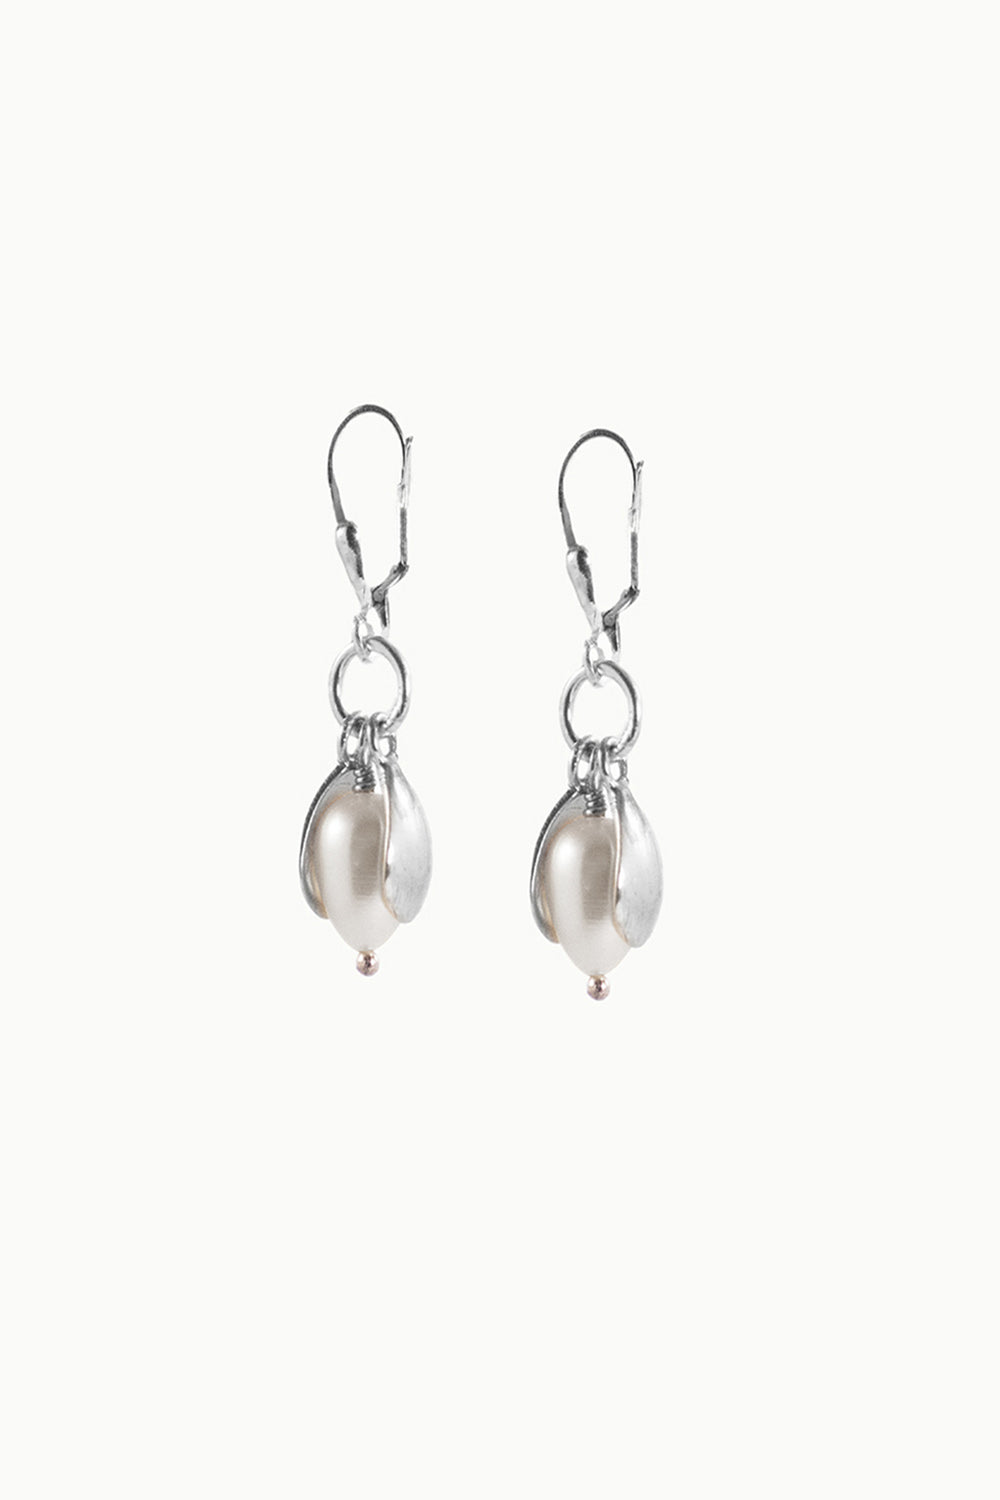 Petite Blossom Bell Earrings Sterling Silver - Ivory